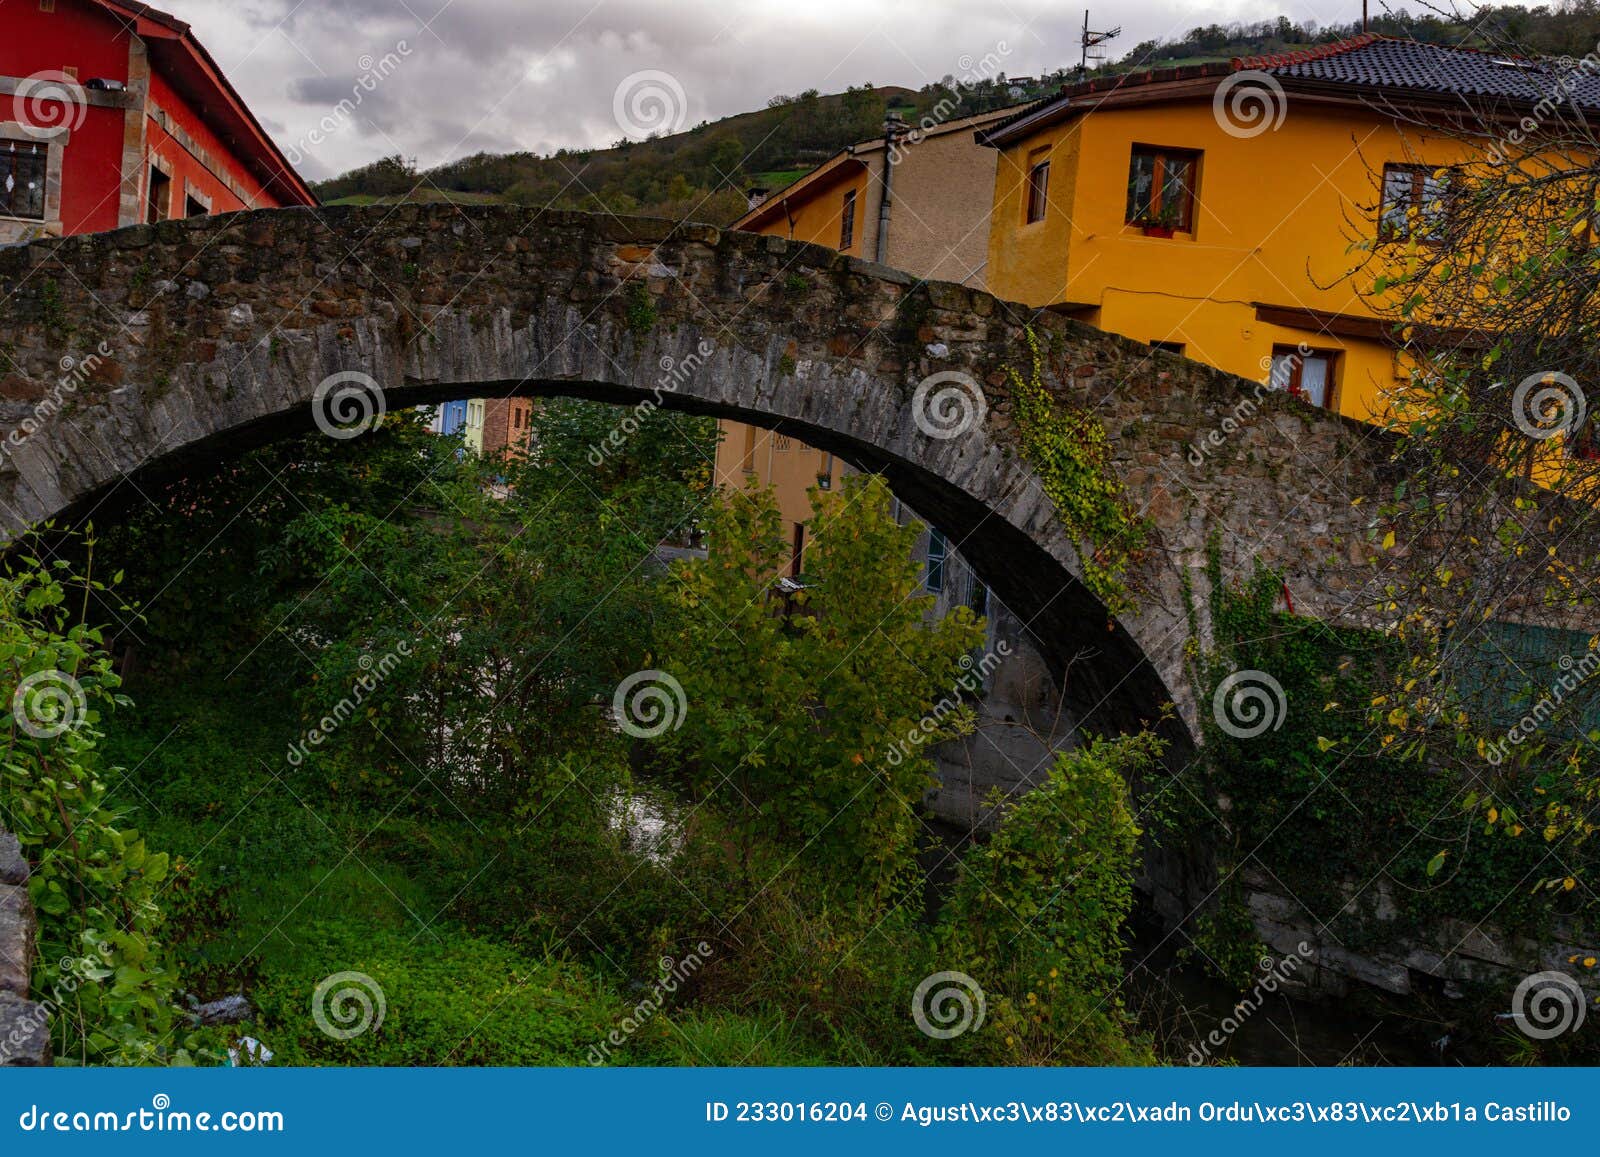 medieval bridge over the villoria river